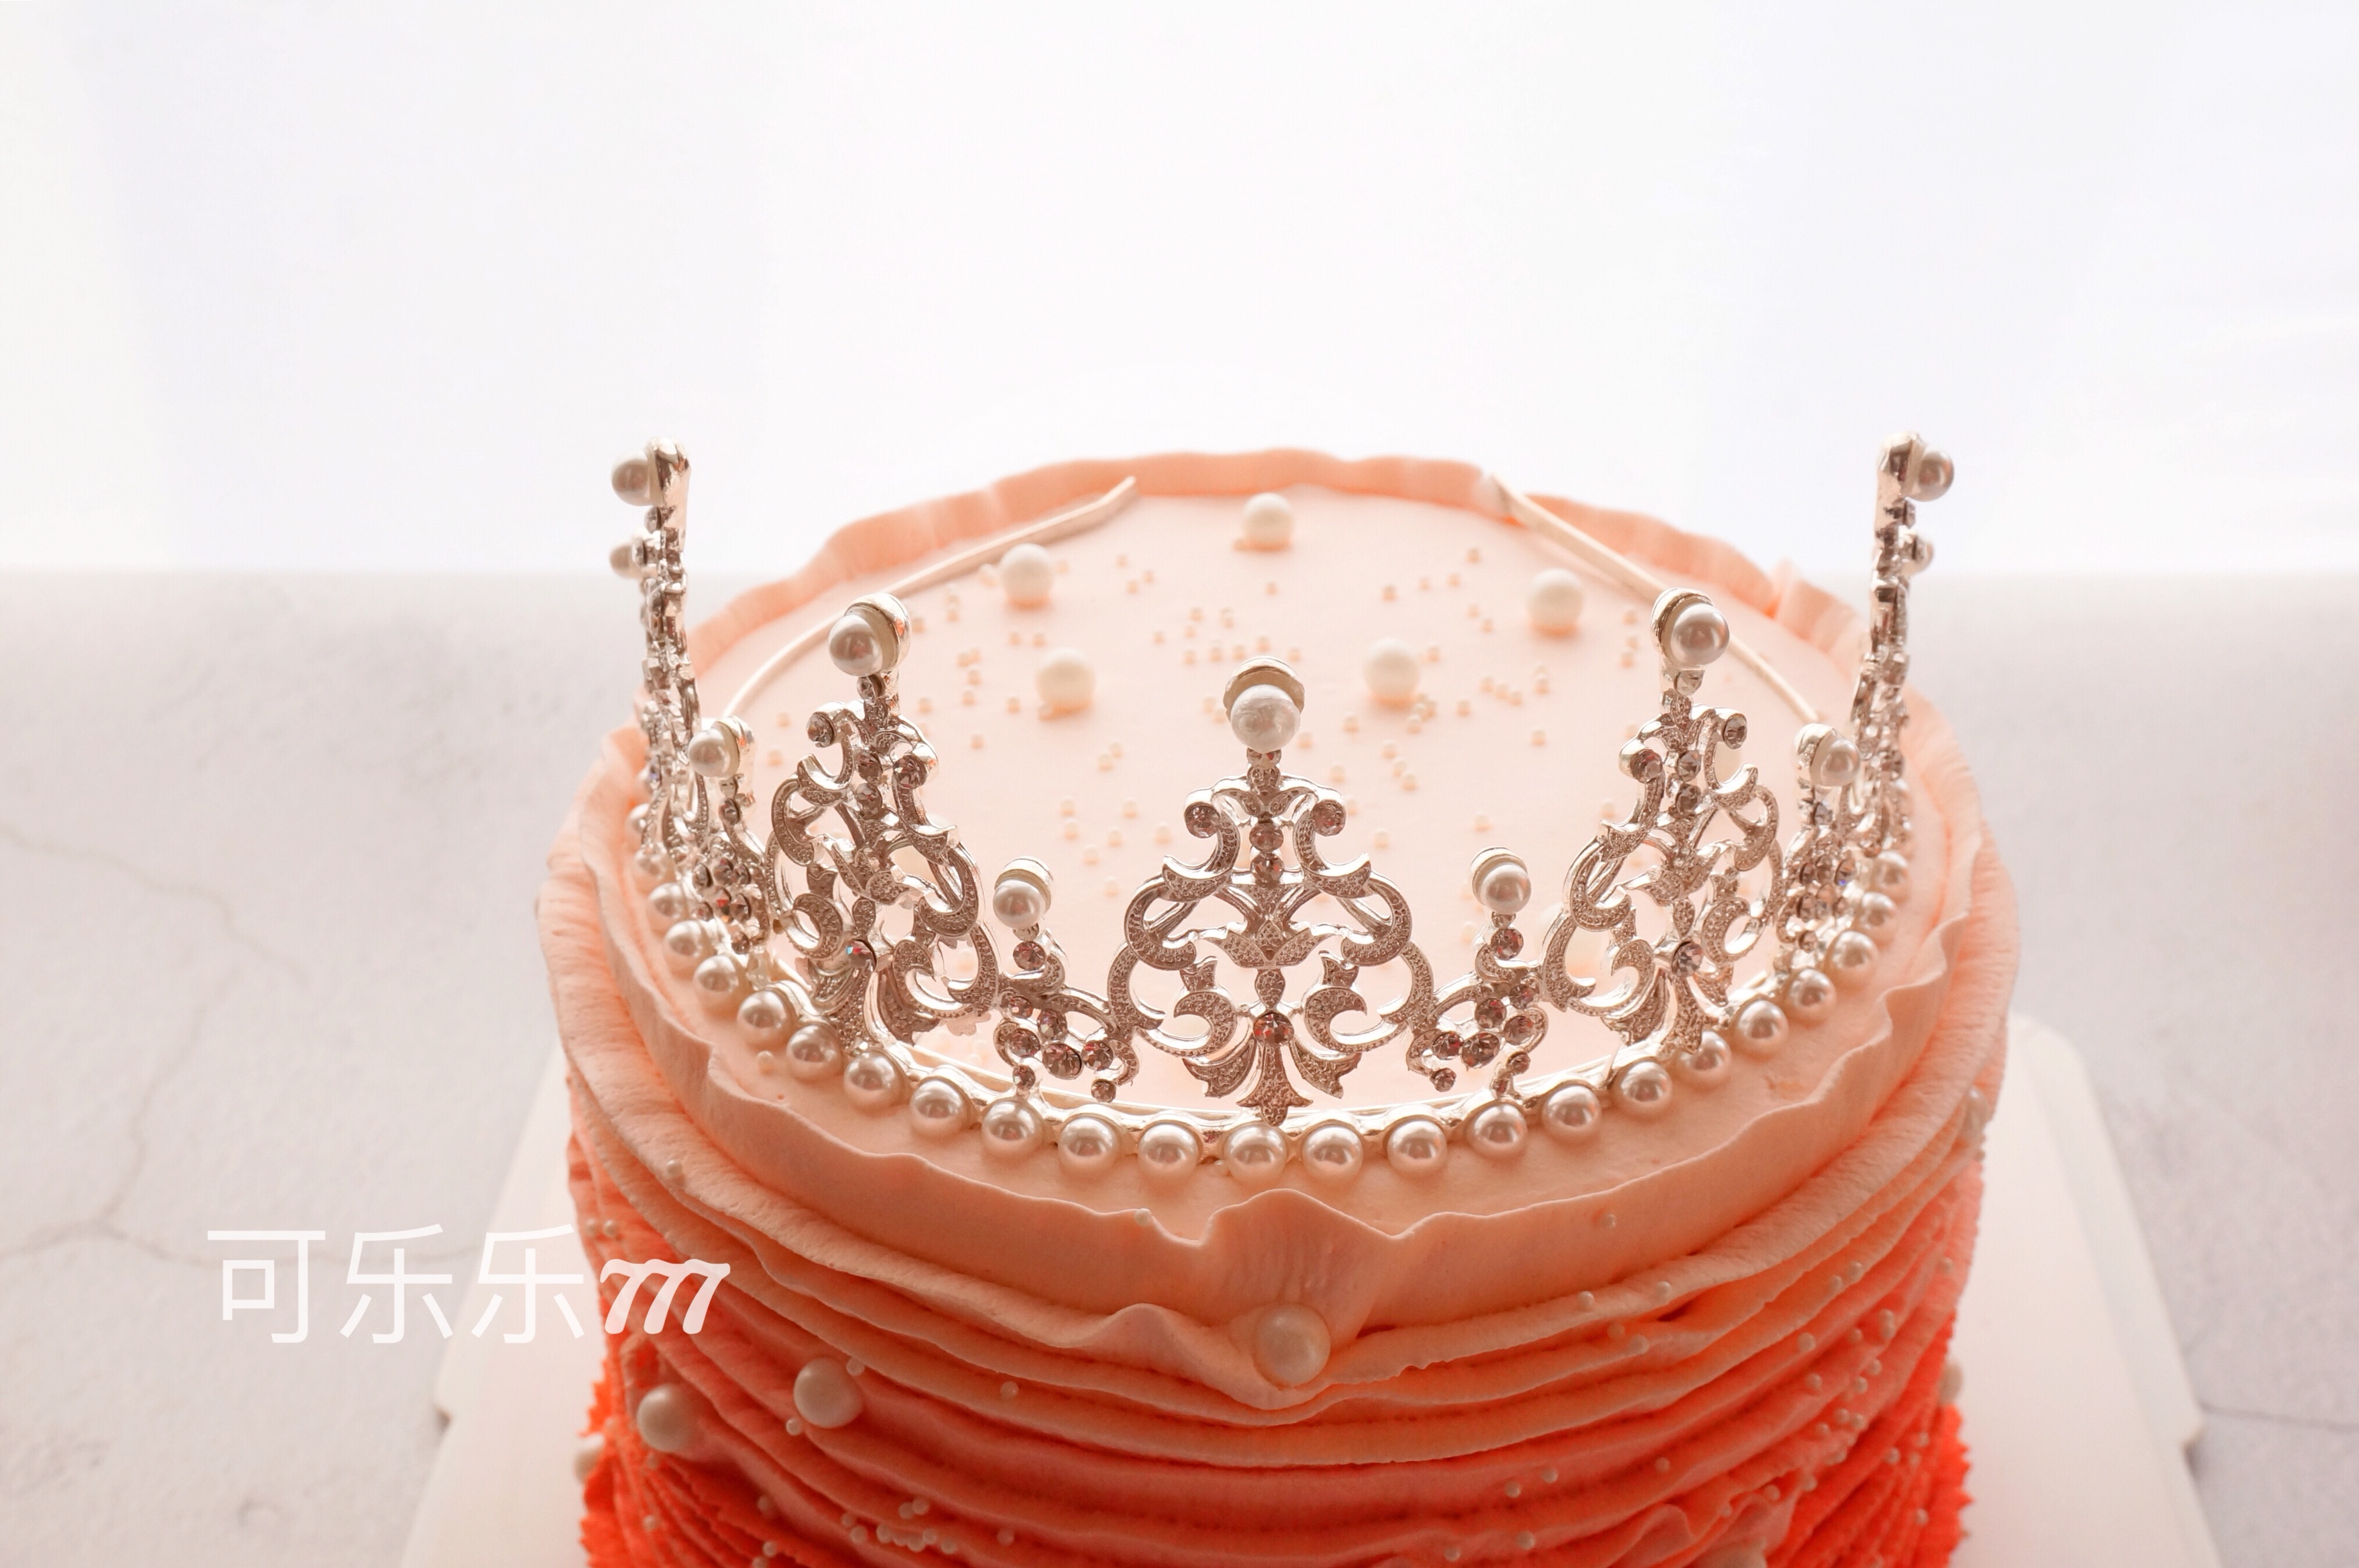 皇冠蛋糕的做法